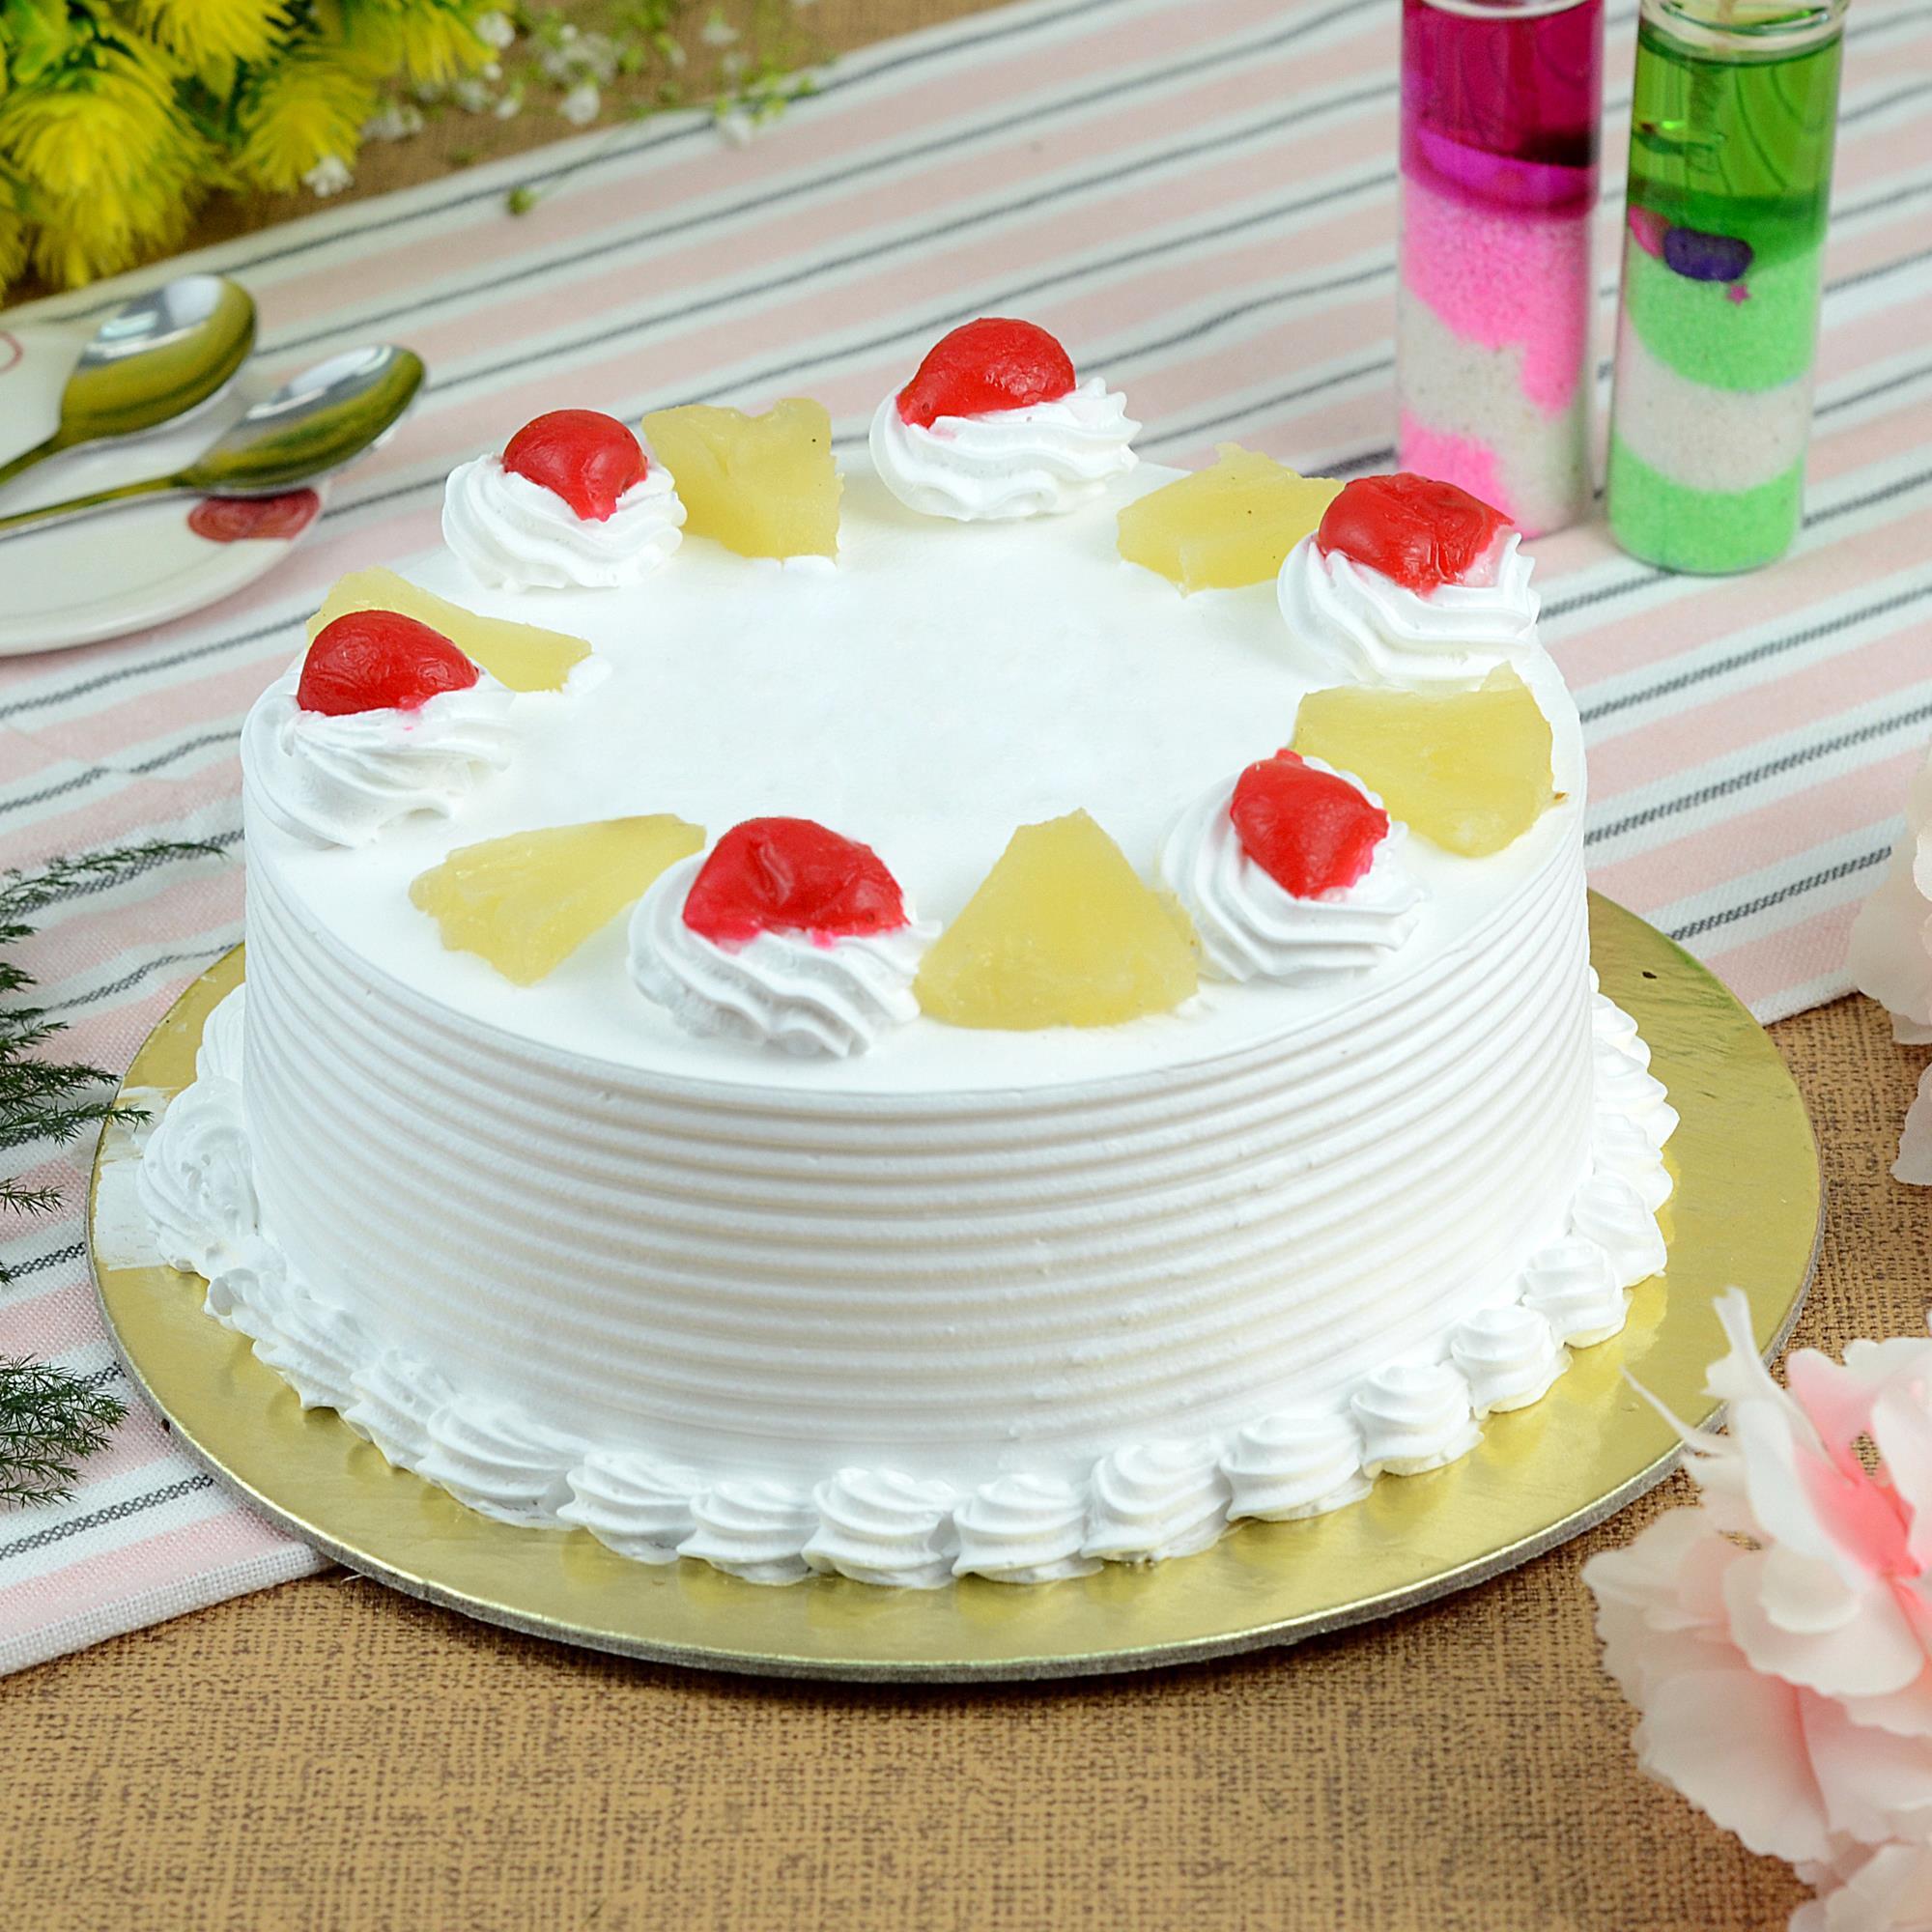 Buy Karachi Bakery 1st Birthday Cake Online - Best Price Karachi Bakery 1st  Birthday Cake - Justdial Shop Online.